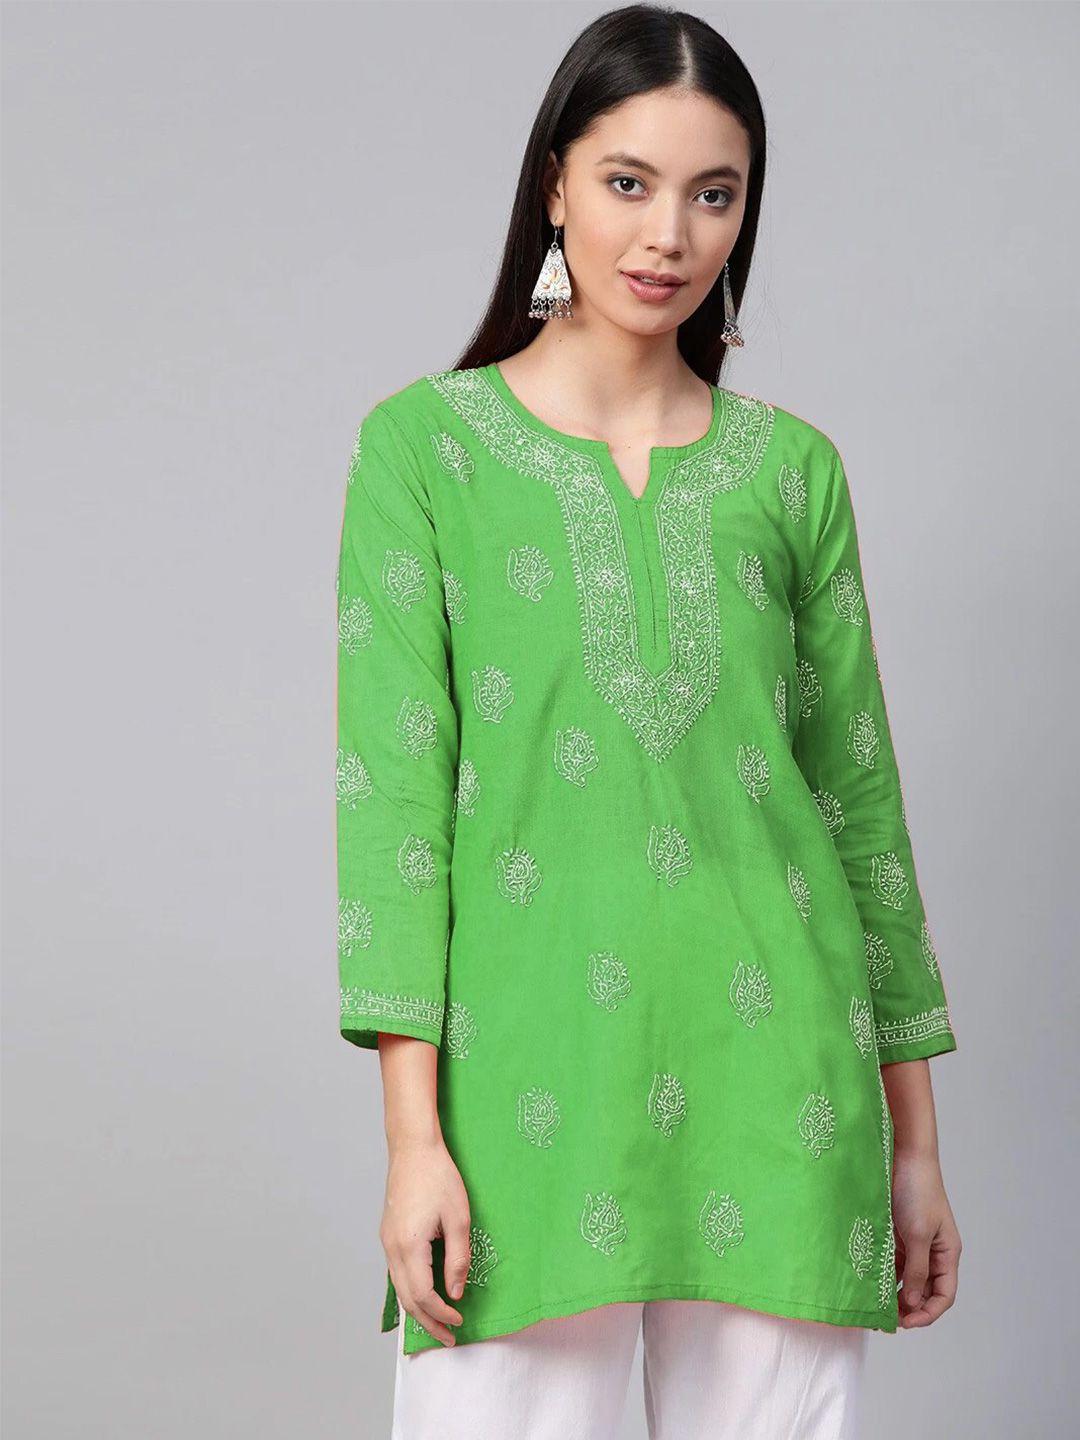 ada-green-&-white-ethnic-motifs-embroidered-thread-work-pure-cotton-thread-work-kurti